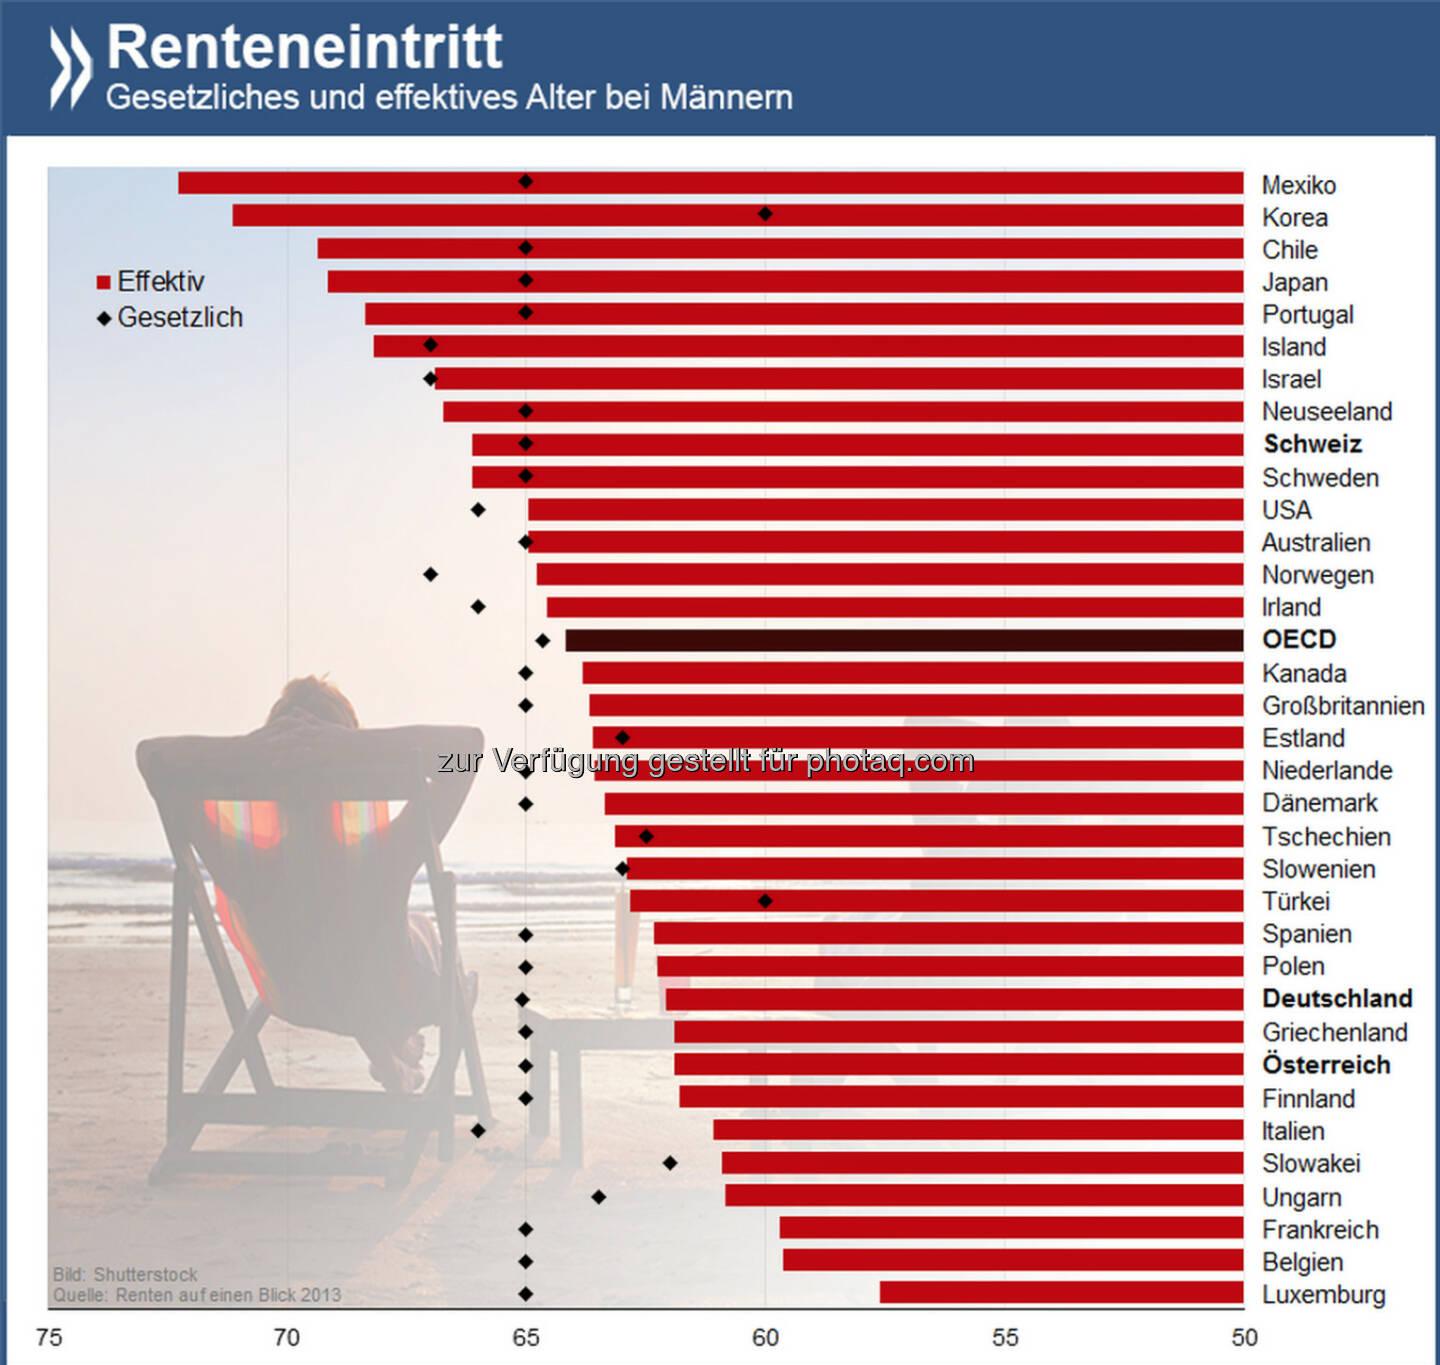 Bis zum Umfallen? Mit durchschnittlich 62 Jahren hören deutsche Männer auf zu arbeiten. In Luxemburg ist bereits mit 58 Jahren Schluss, Mexikaner hingegen schuften bis 72. In allen drei Ländern ist das gesetzliche Rentenalter gleich: 65 Jahre.

Informiere Dich hier über Renten und Altersvorsorge: http://bit.ly/1pcfTyO (S. 140-141)